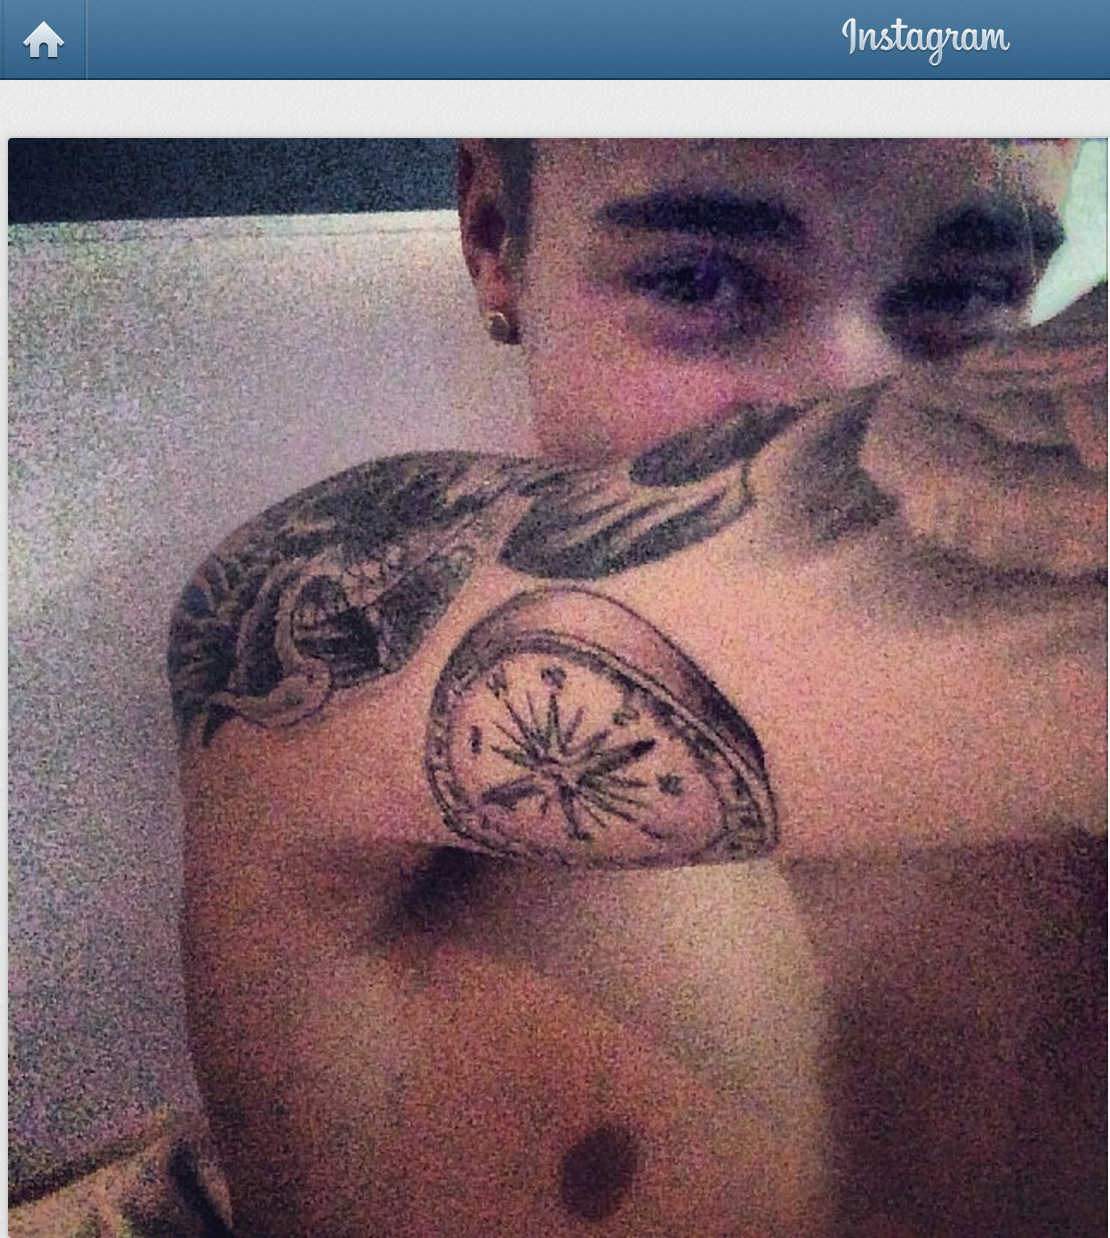 Justin visade upp sin senaste tatuering. 